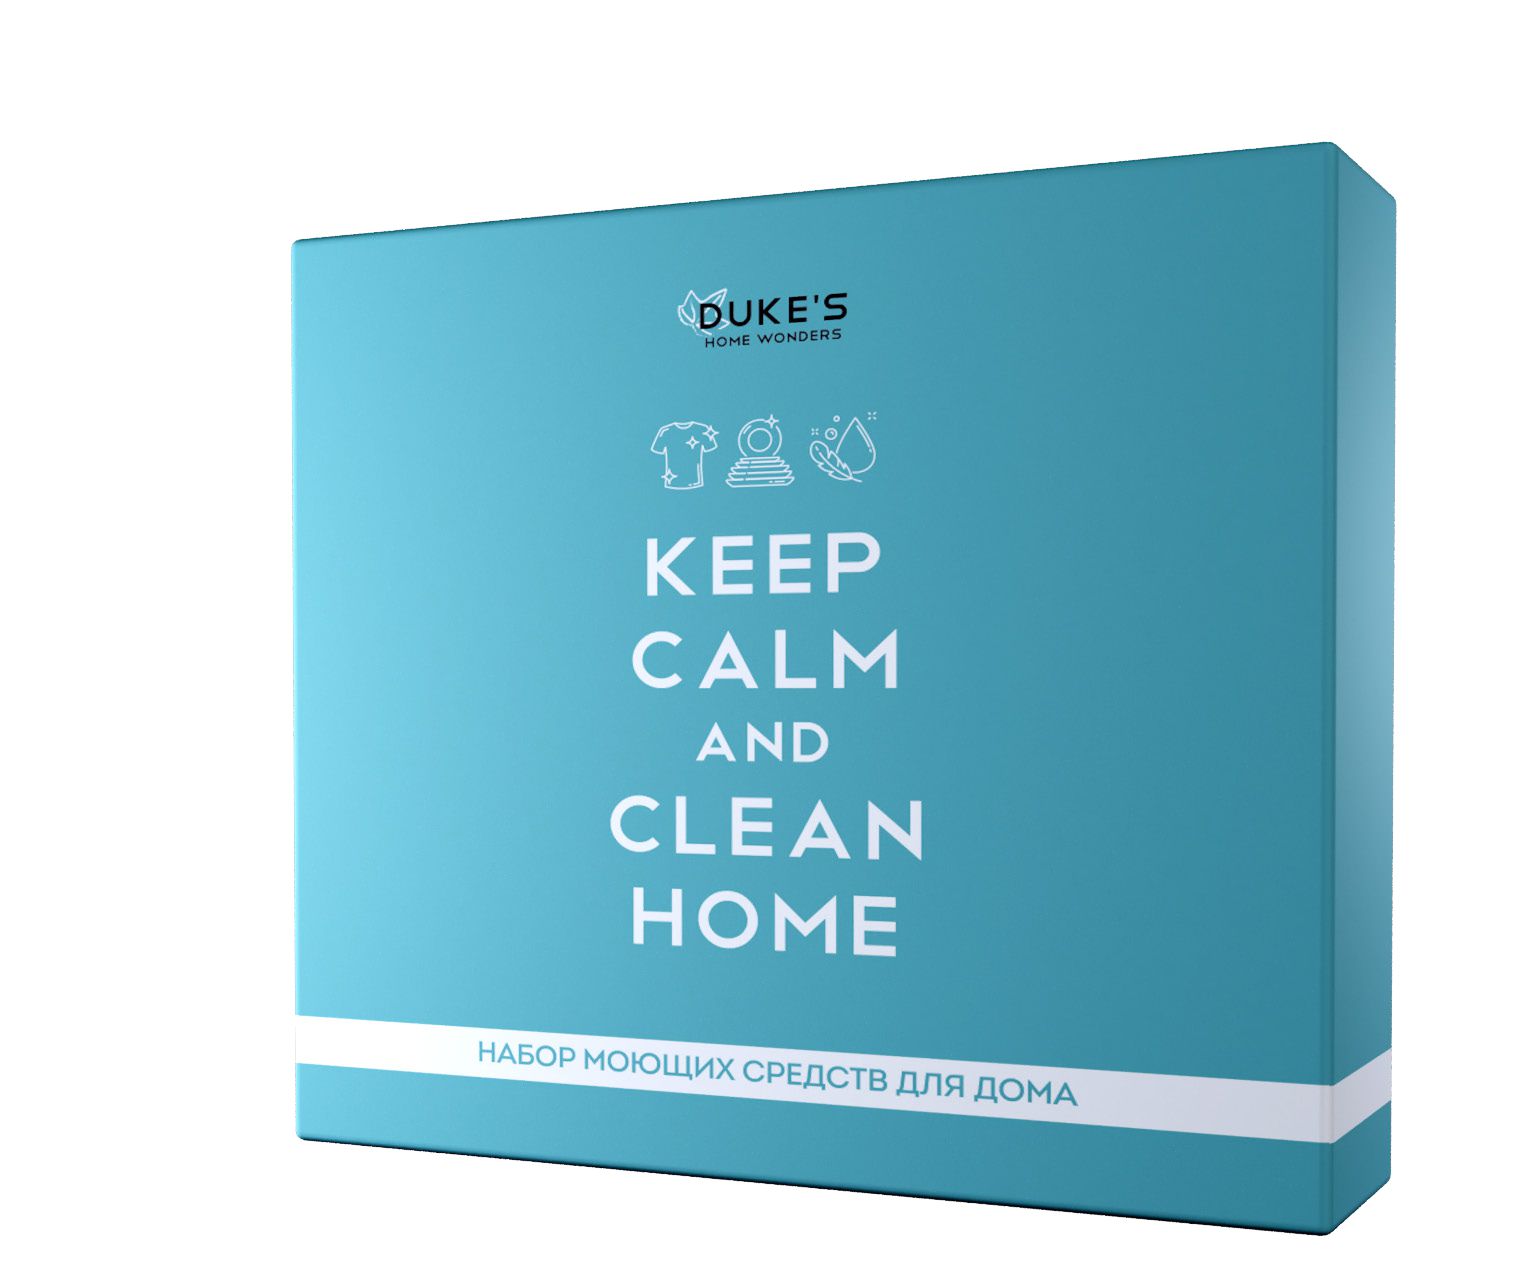 DUKE'S Набор моющих средств для дома 